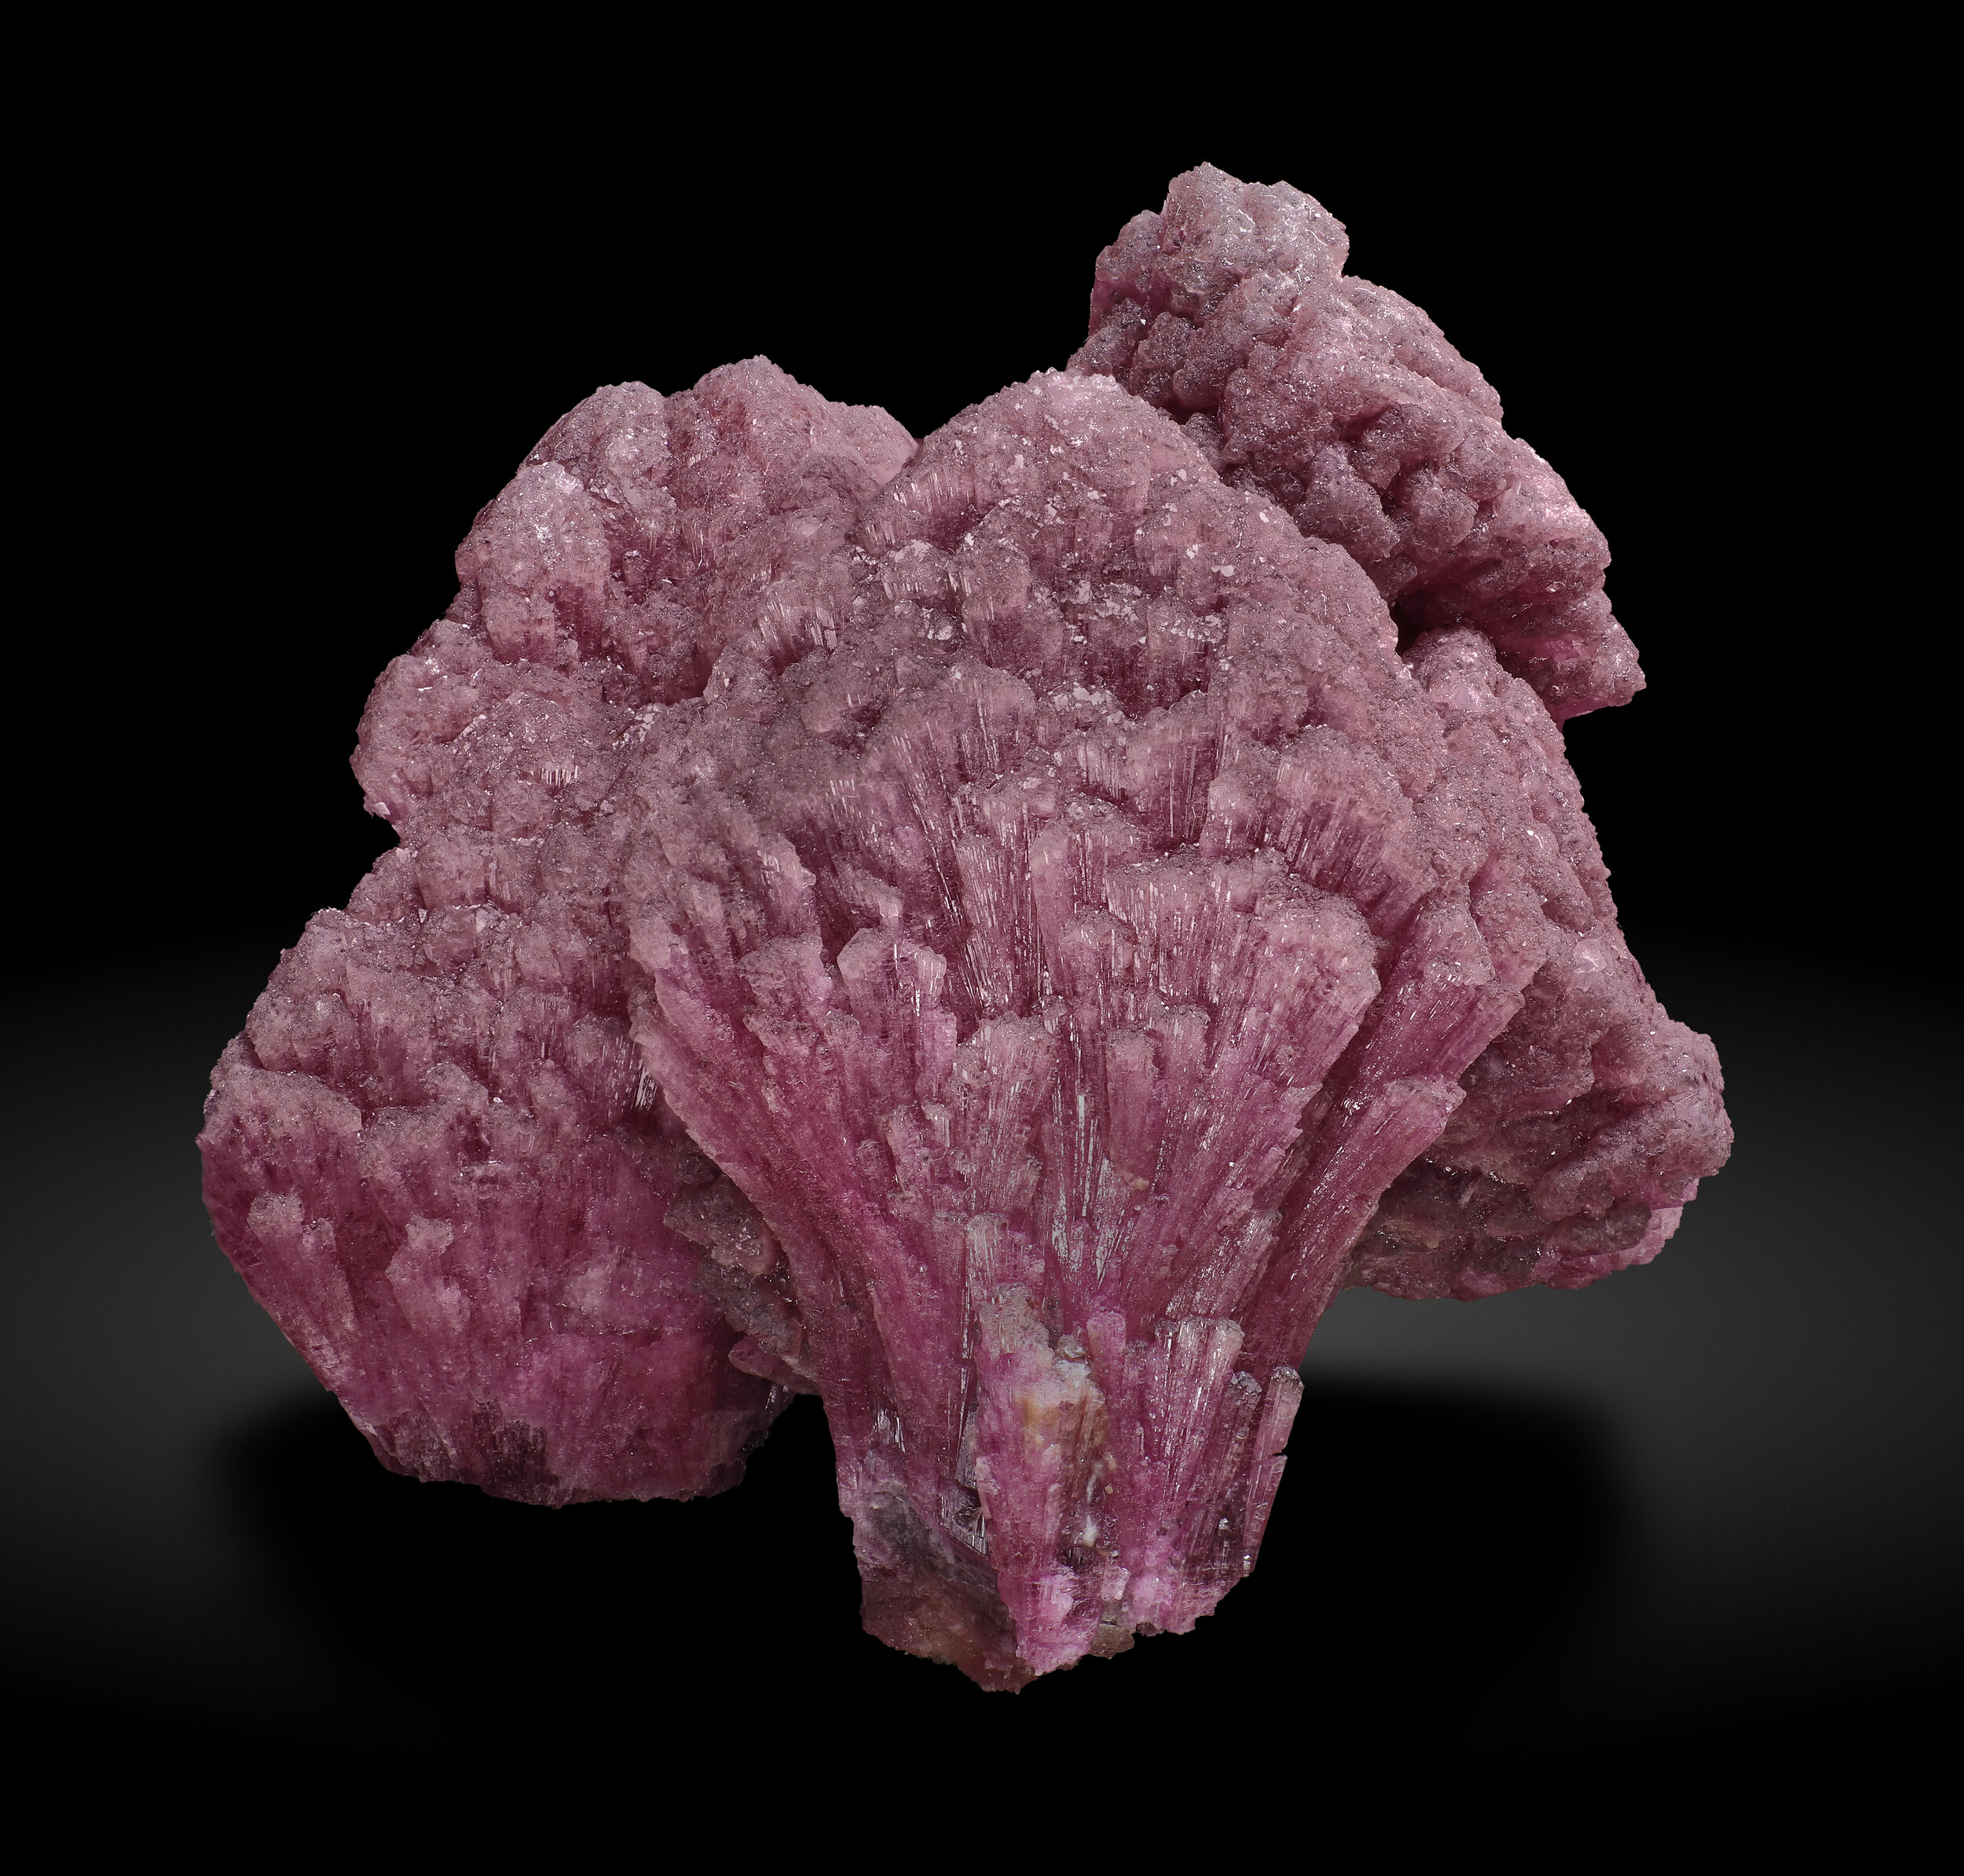 specimens/s_imagesAQ1/Elbaite-Schorl-TTA89AQ1_0453_f.jpg